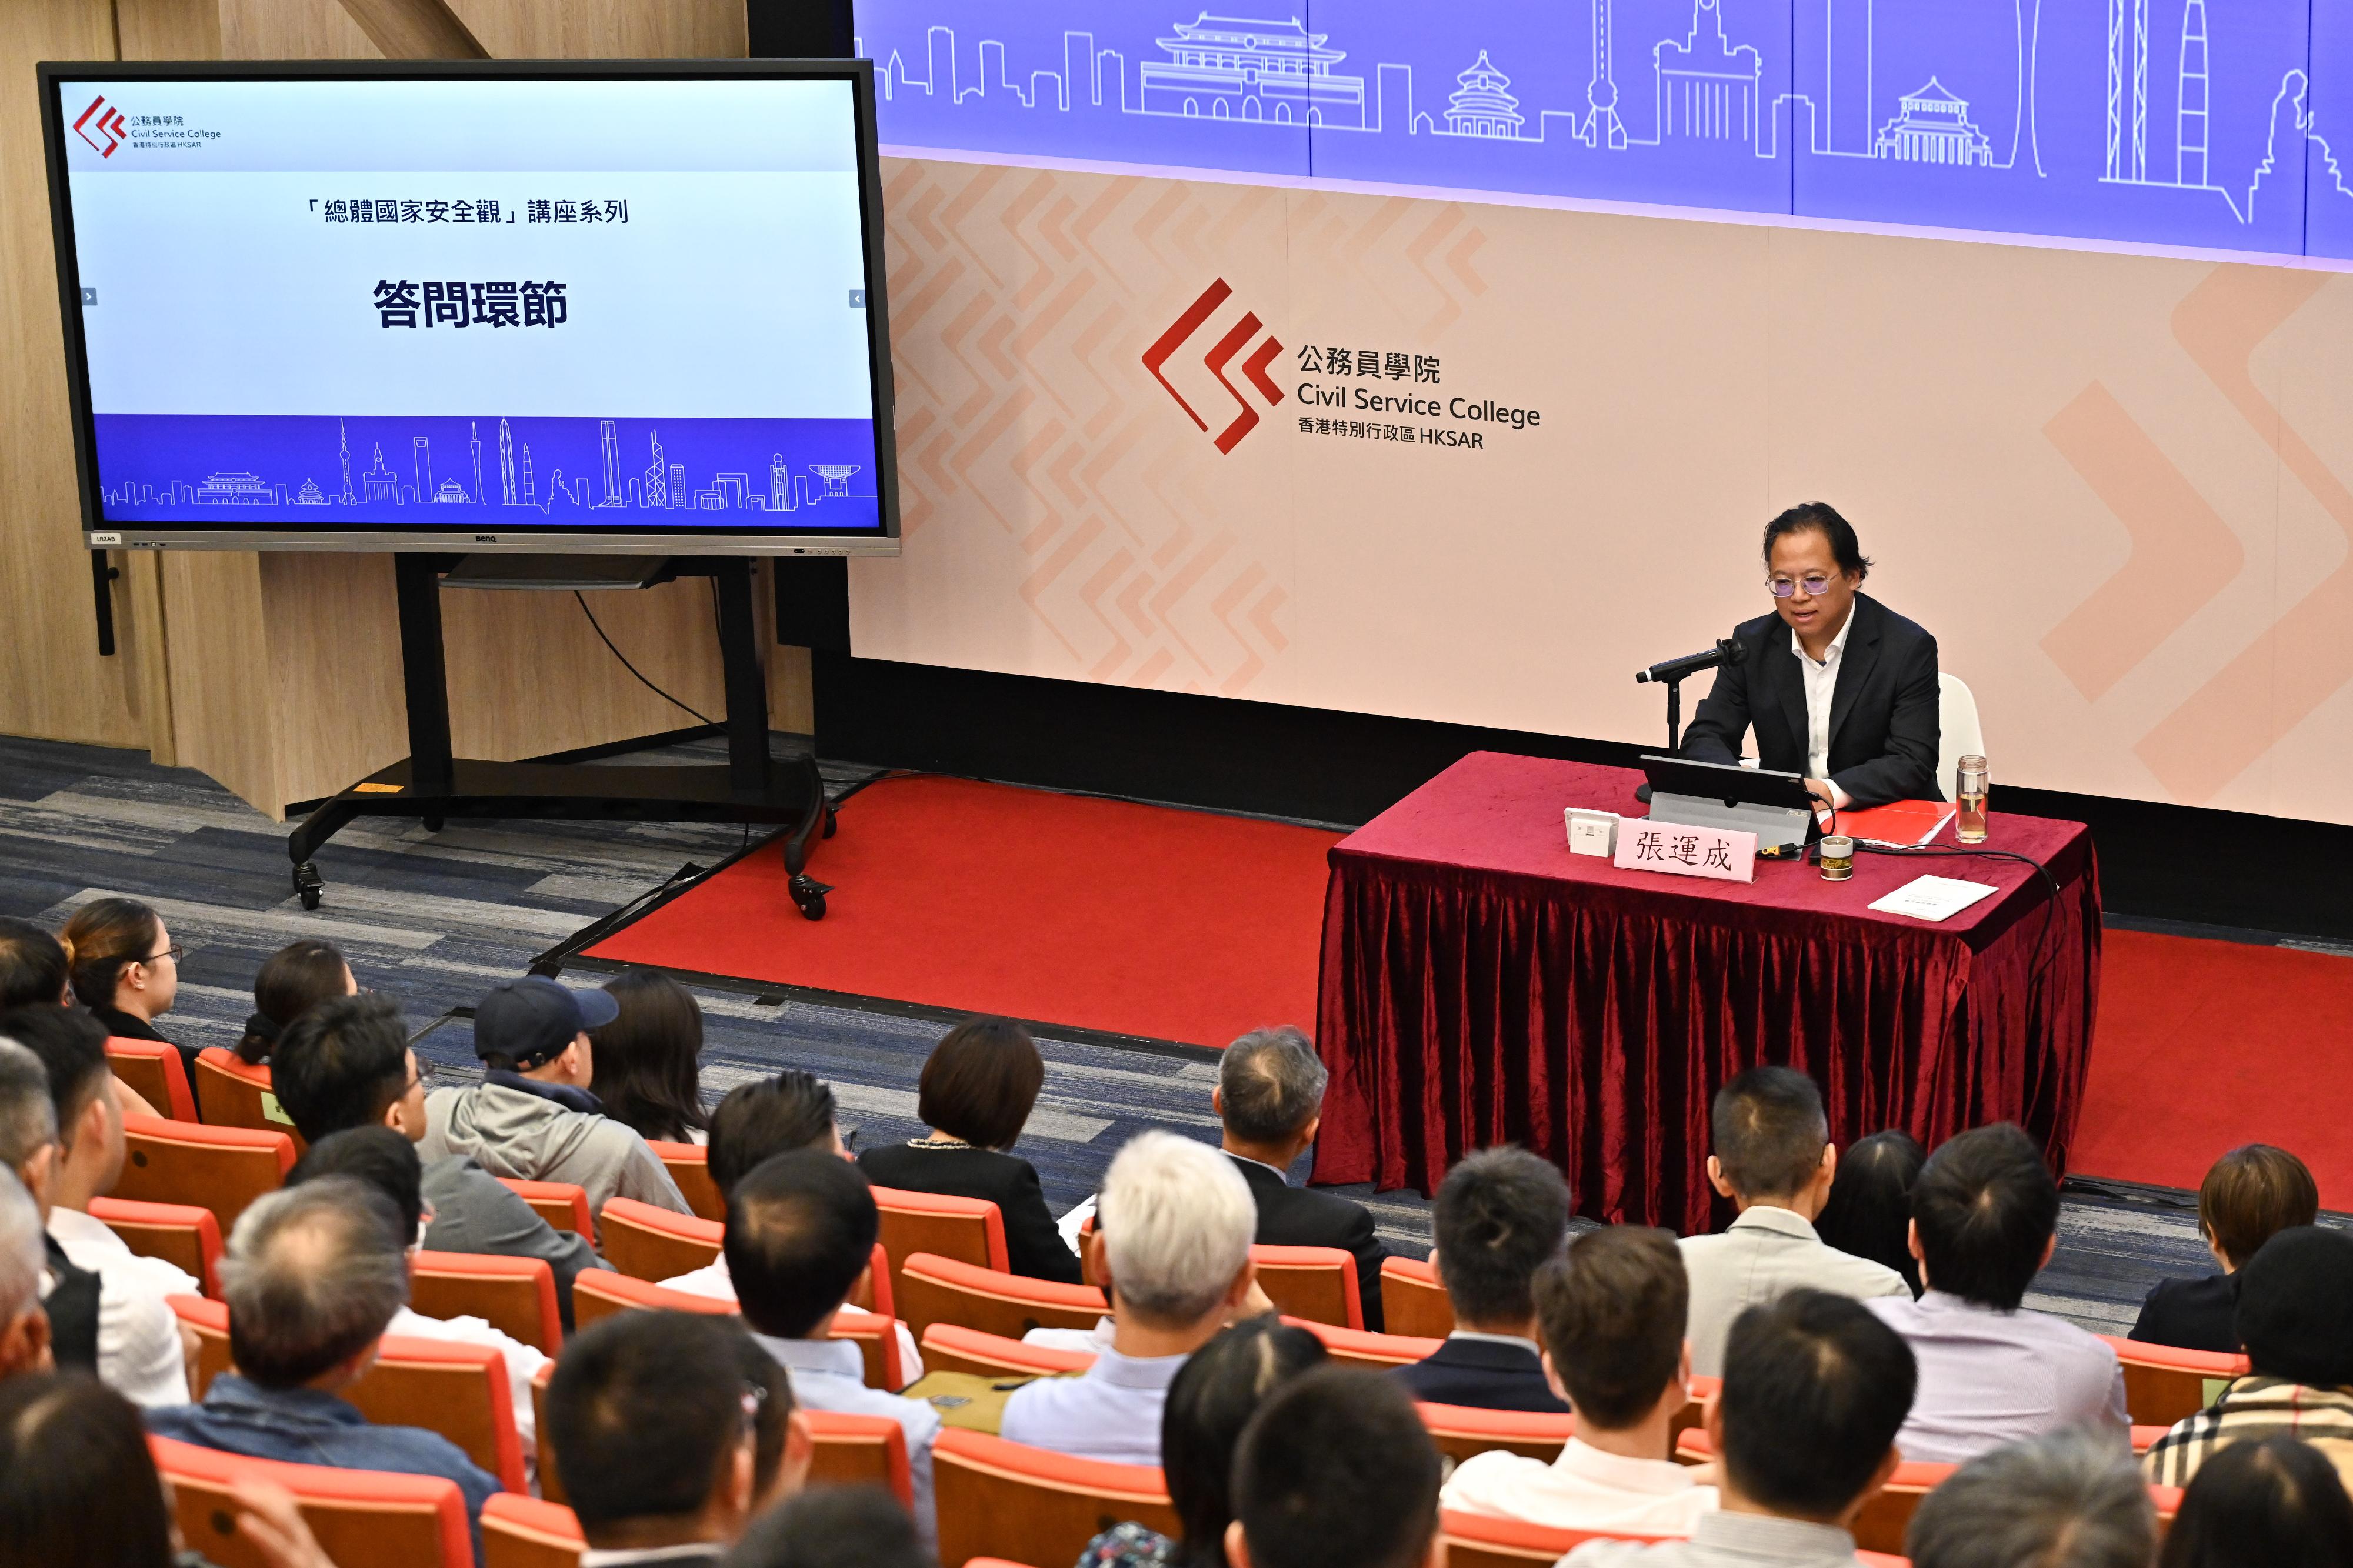 主講的中國現代國際關係研究院世界經濟研究所所長張運成在互動討論環節回答提問。